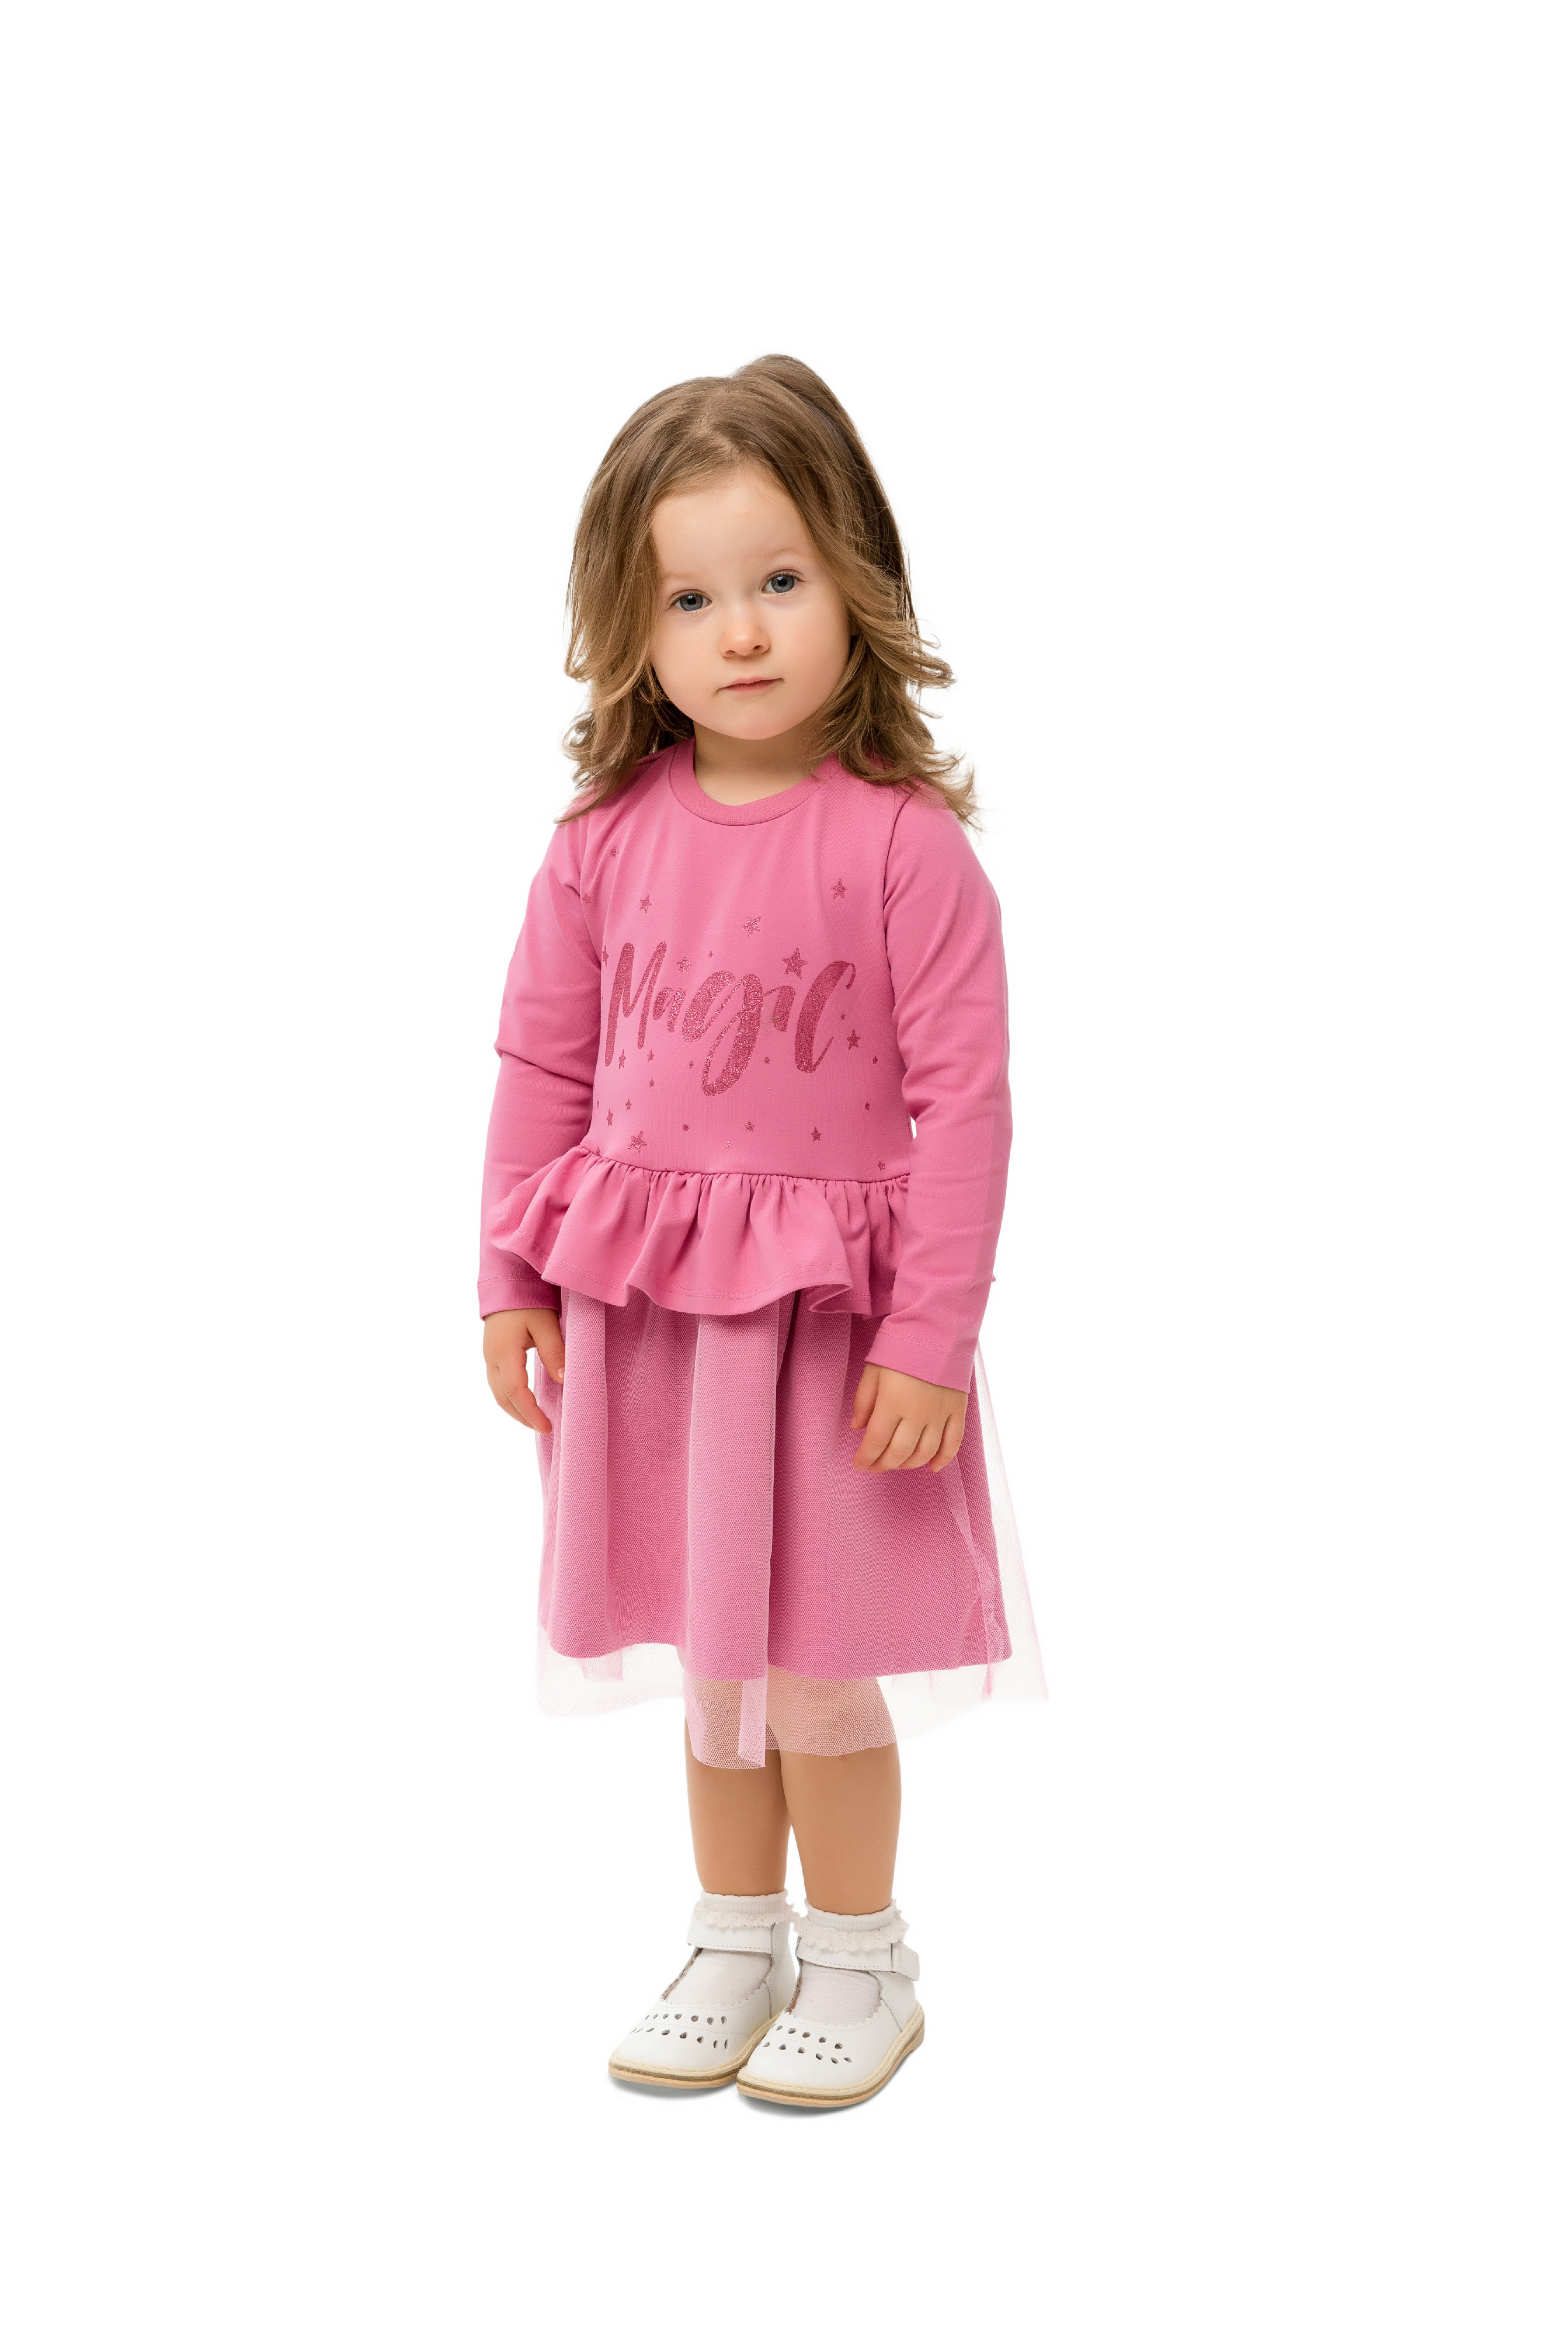 Dívčí šaty - WINKIKI WKG 92555, růžová Barva: Růžová, Velikost: 122